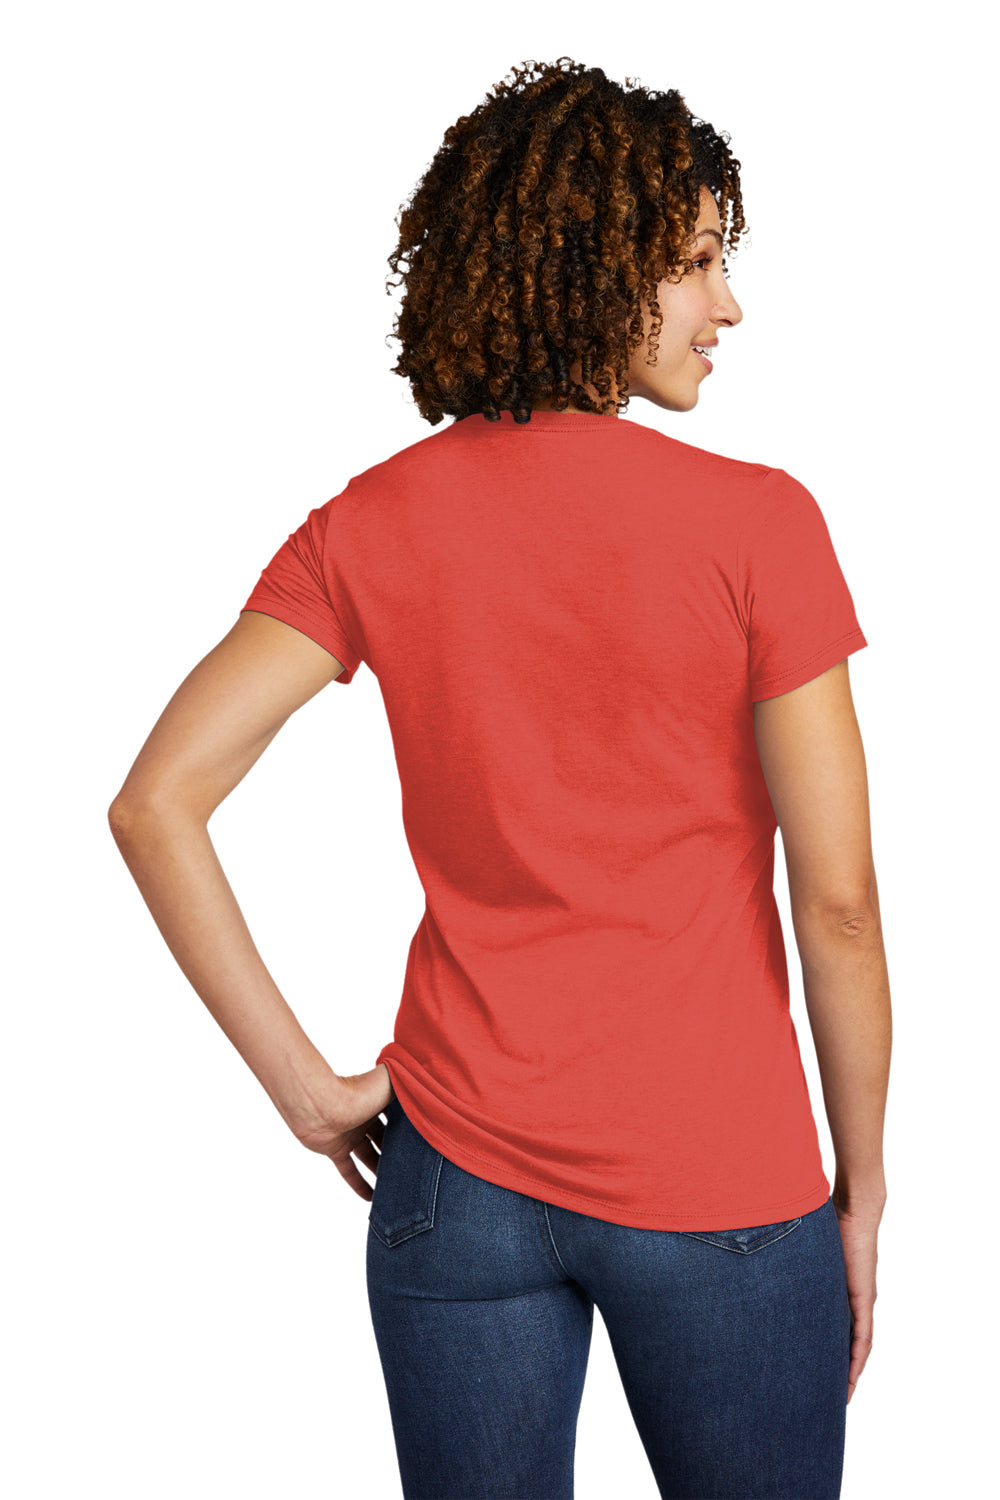 Allmade AL2018 Womens Short Sleeve V-Neck T-Shirt Desert Sun Red Model Back